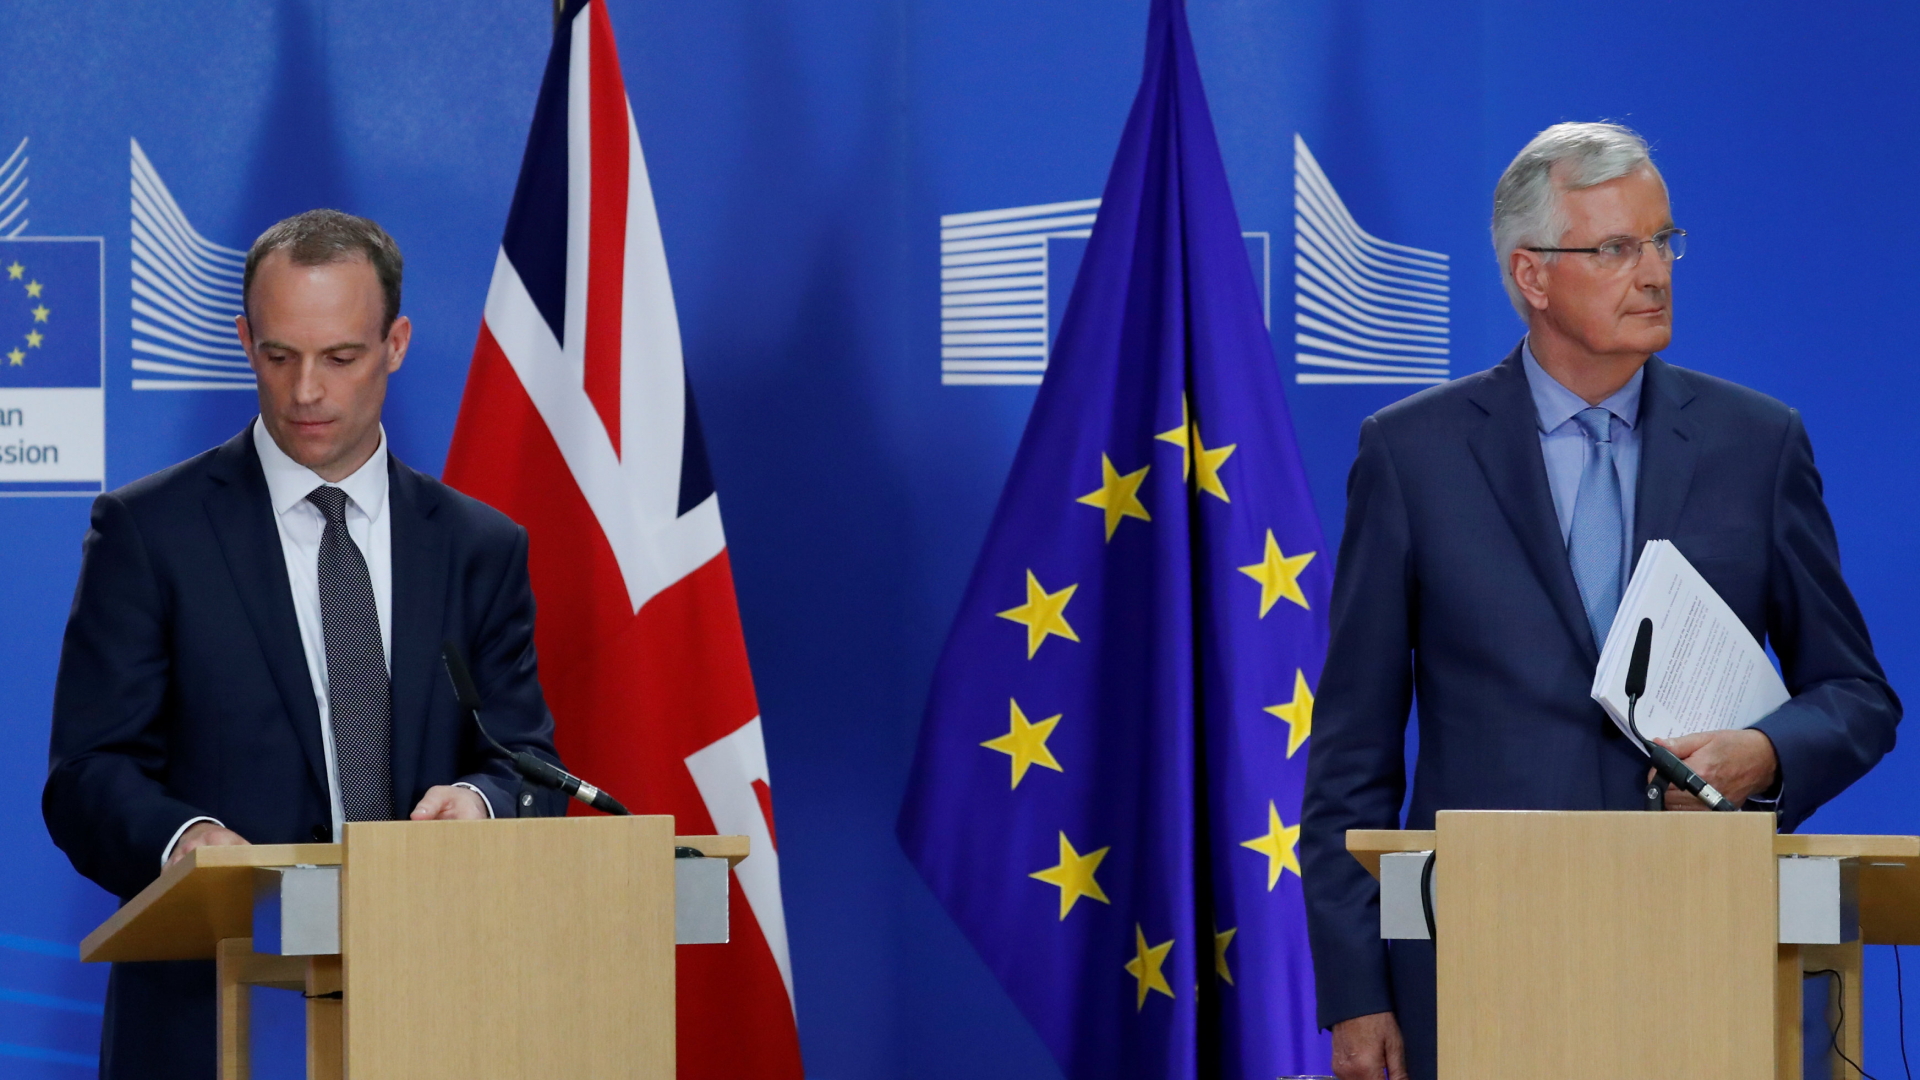 Der britische Brexit-Minister Dominic Raab and der Verhandlungsführer der EU, Michel Barnier, bei einer Pressekonferenz in Brüssel | Bildquelle: REUTERS